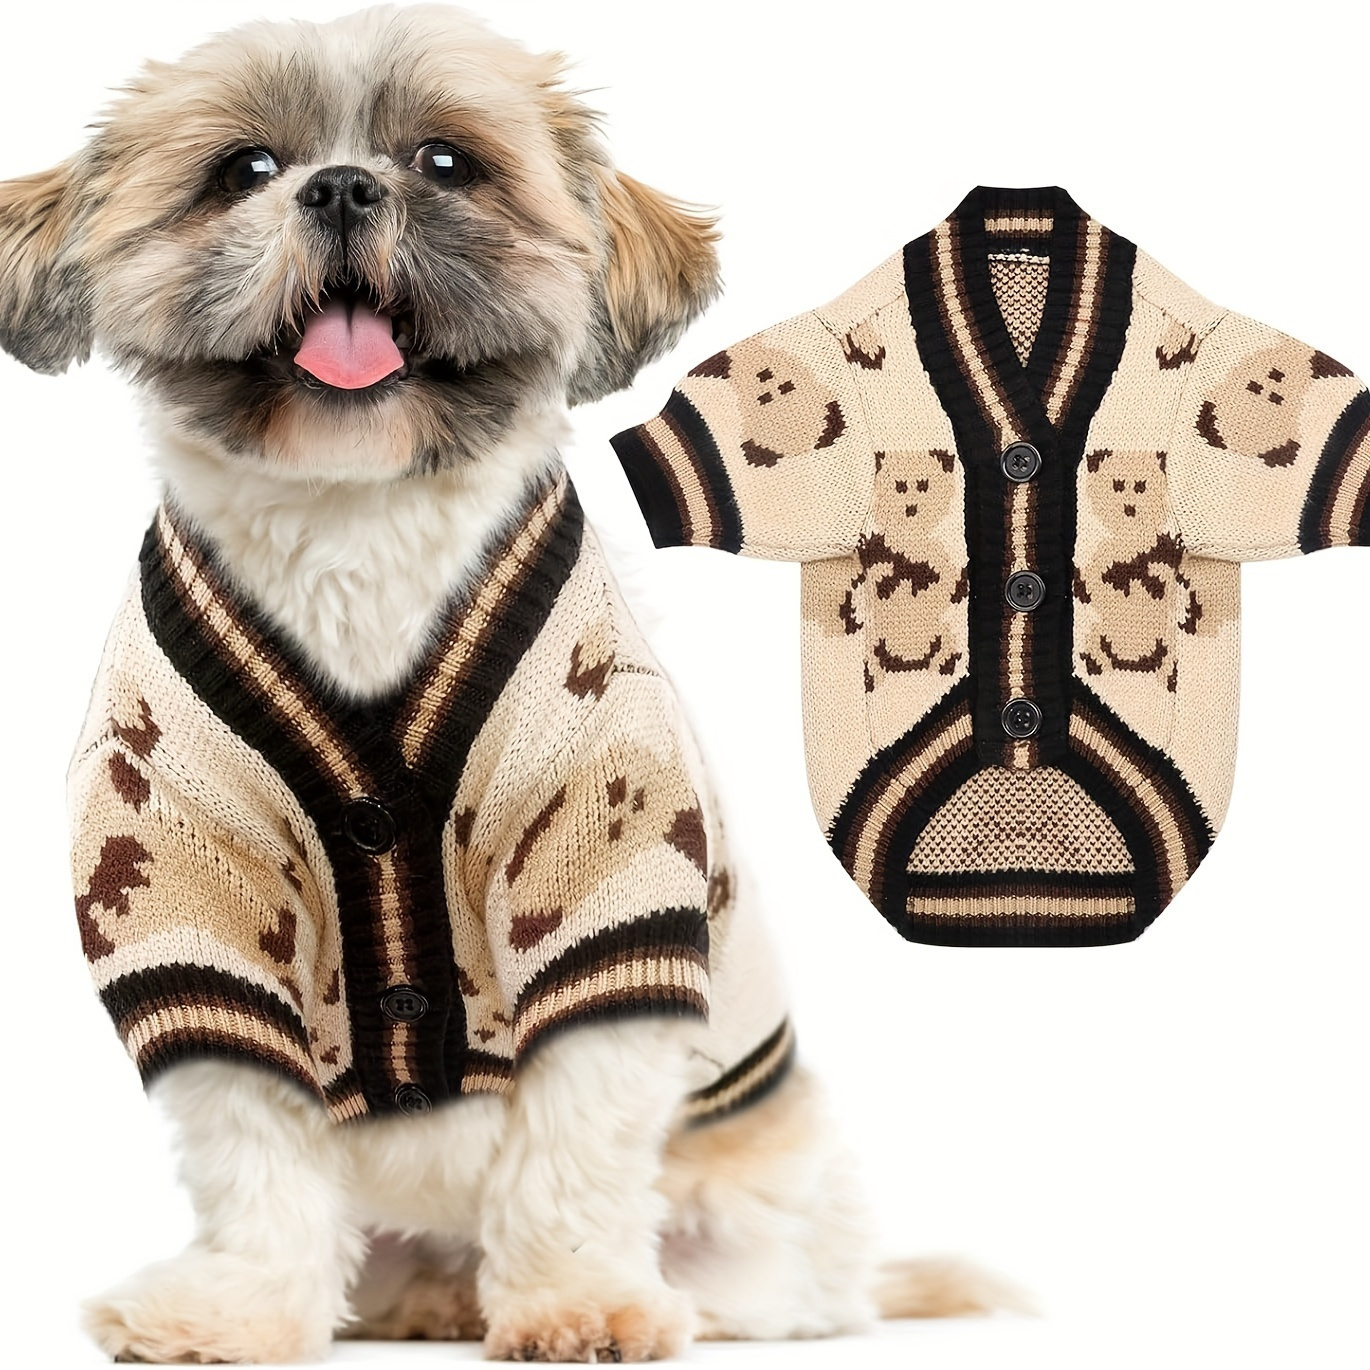 Gucci dog clothes, New gucci jacket